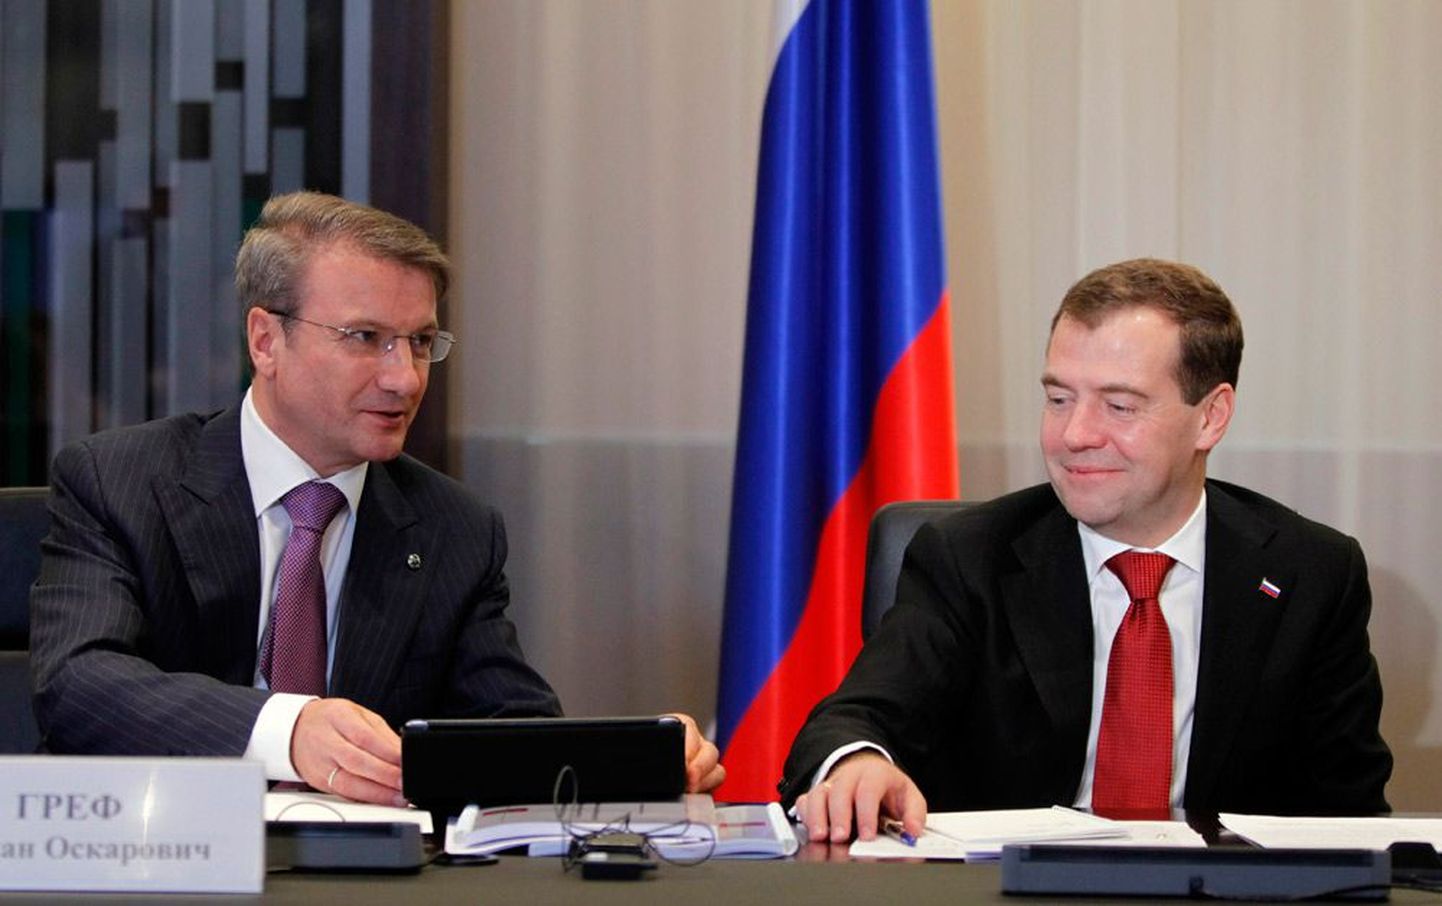 Venemaa president Dmitri Medvedev ja Sberbanki nõukogu esimees German Gref möödunud reedel Moskvas Sberbanki peakorteris peetud nõupidamisel.